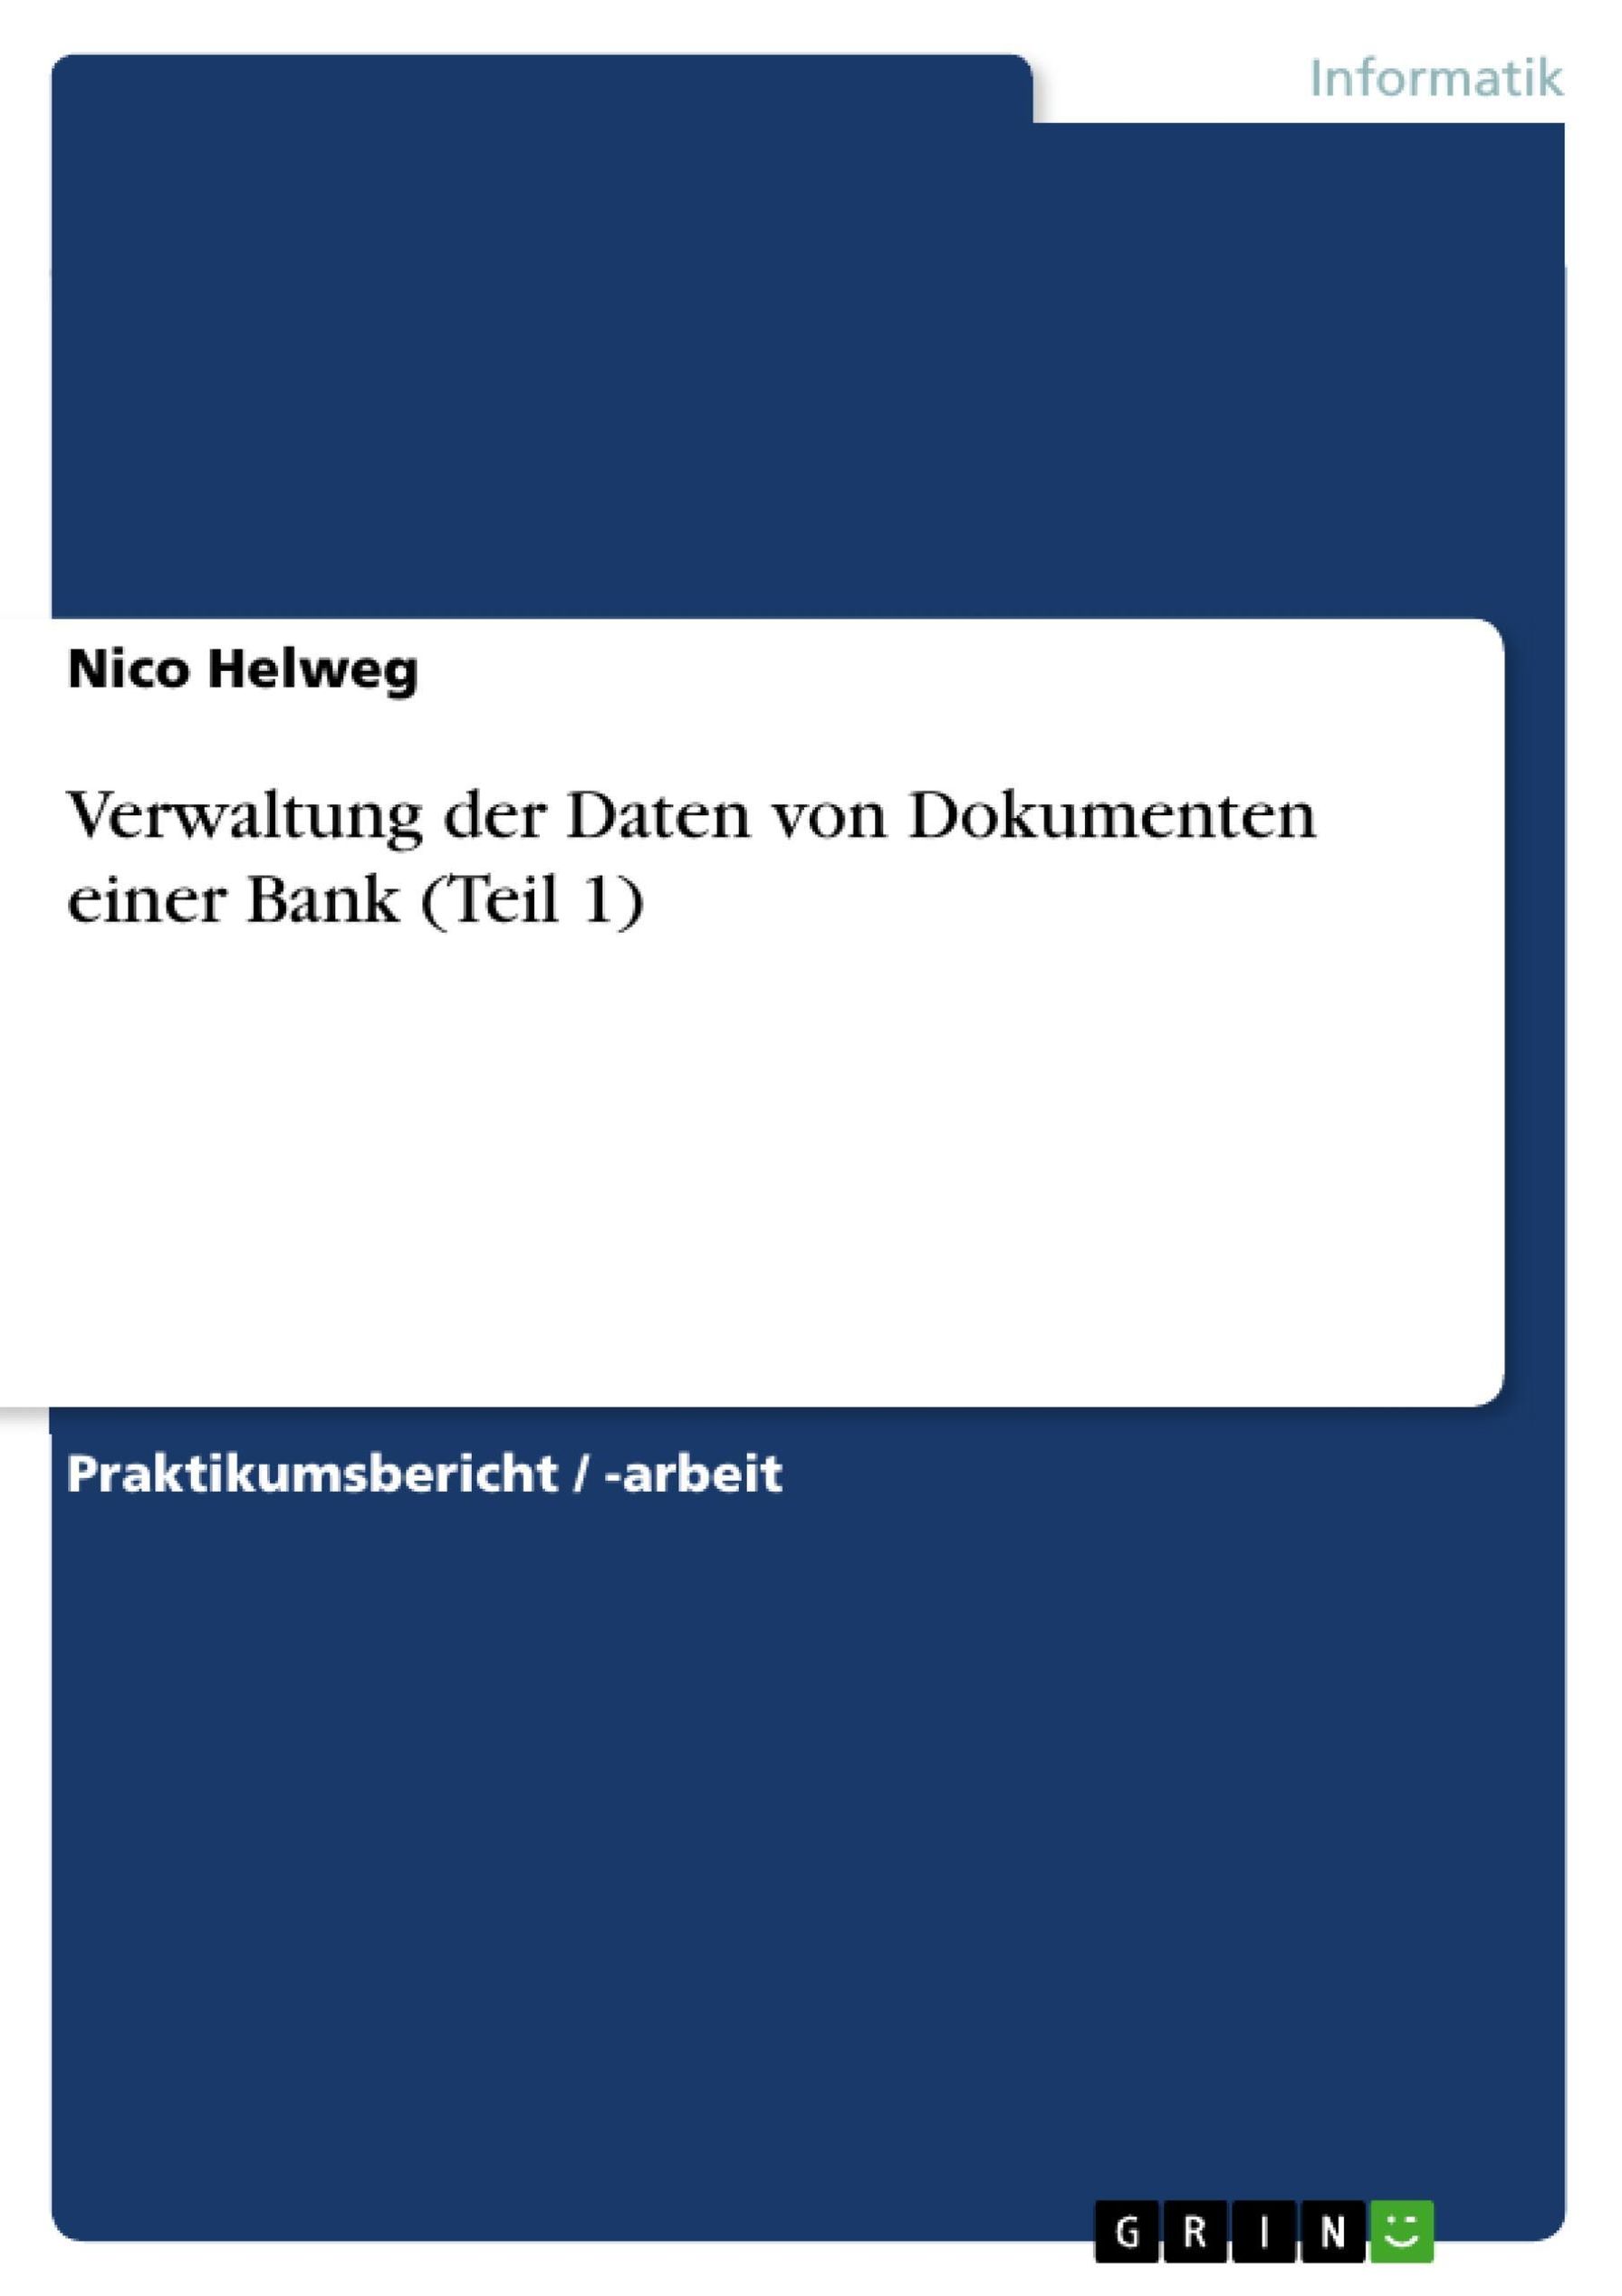 Verwaltung der Daten von Dokumenten einer Bank Teil 1 eBook v. Nico Helweg  | Weltbild